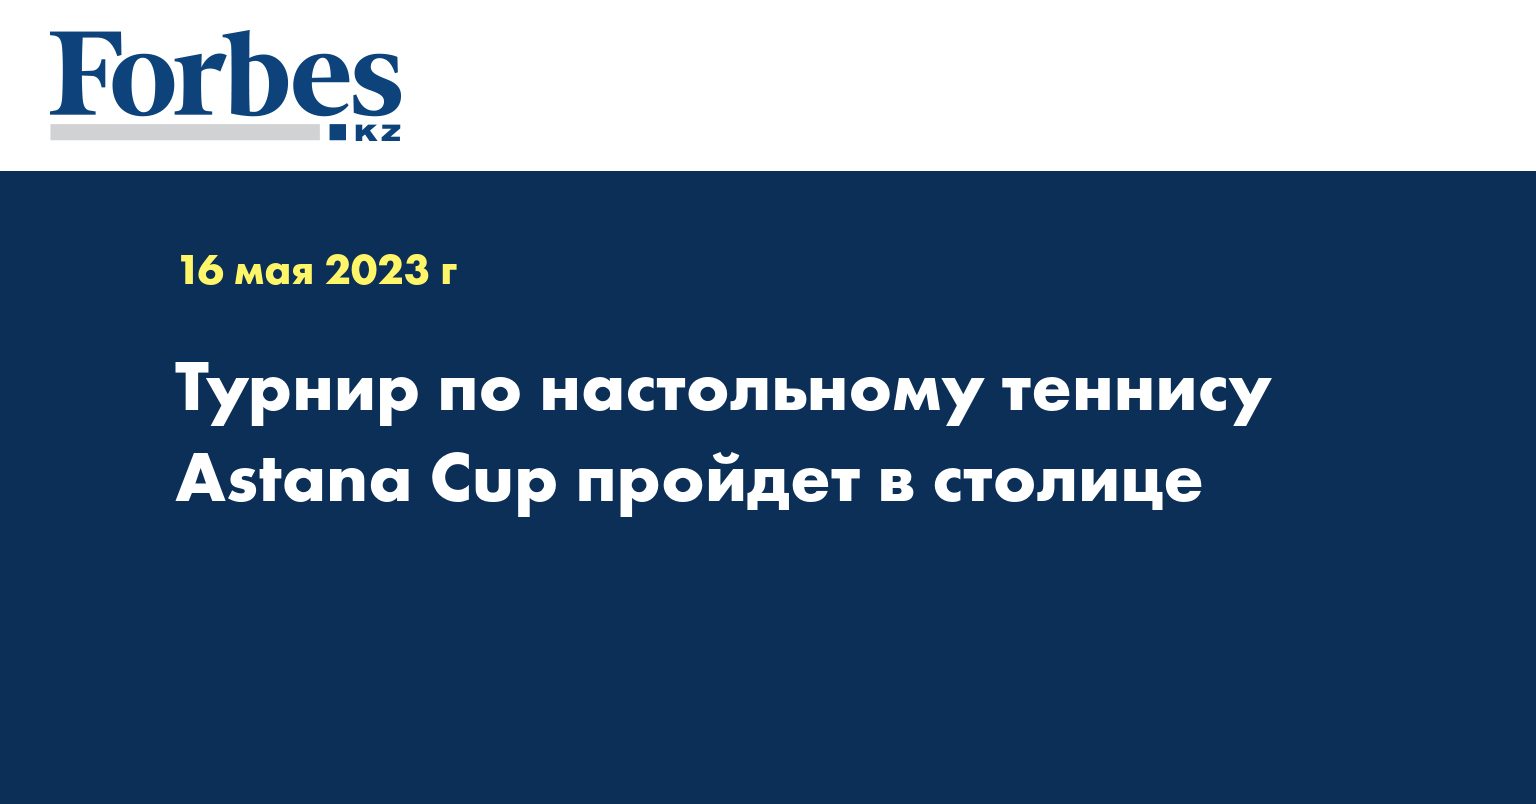 Турнир по настольному теннису Astana Cup пройдет в столице